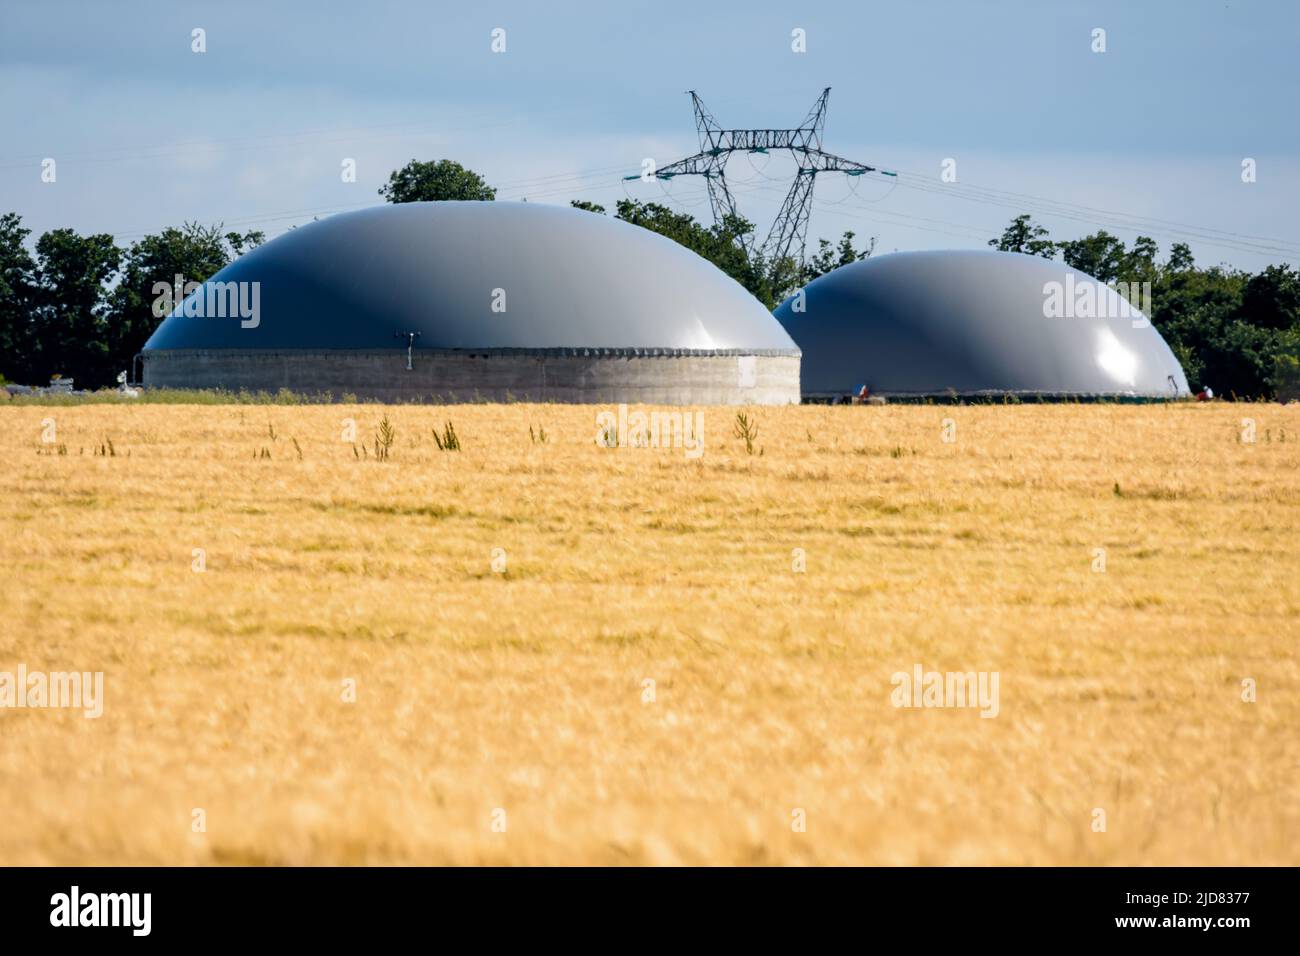 Vista generale di una pianta di biogas con due digestivi in un campo di grano ed un pilone di elettricità nella distanza nella campagna. Foto Stock